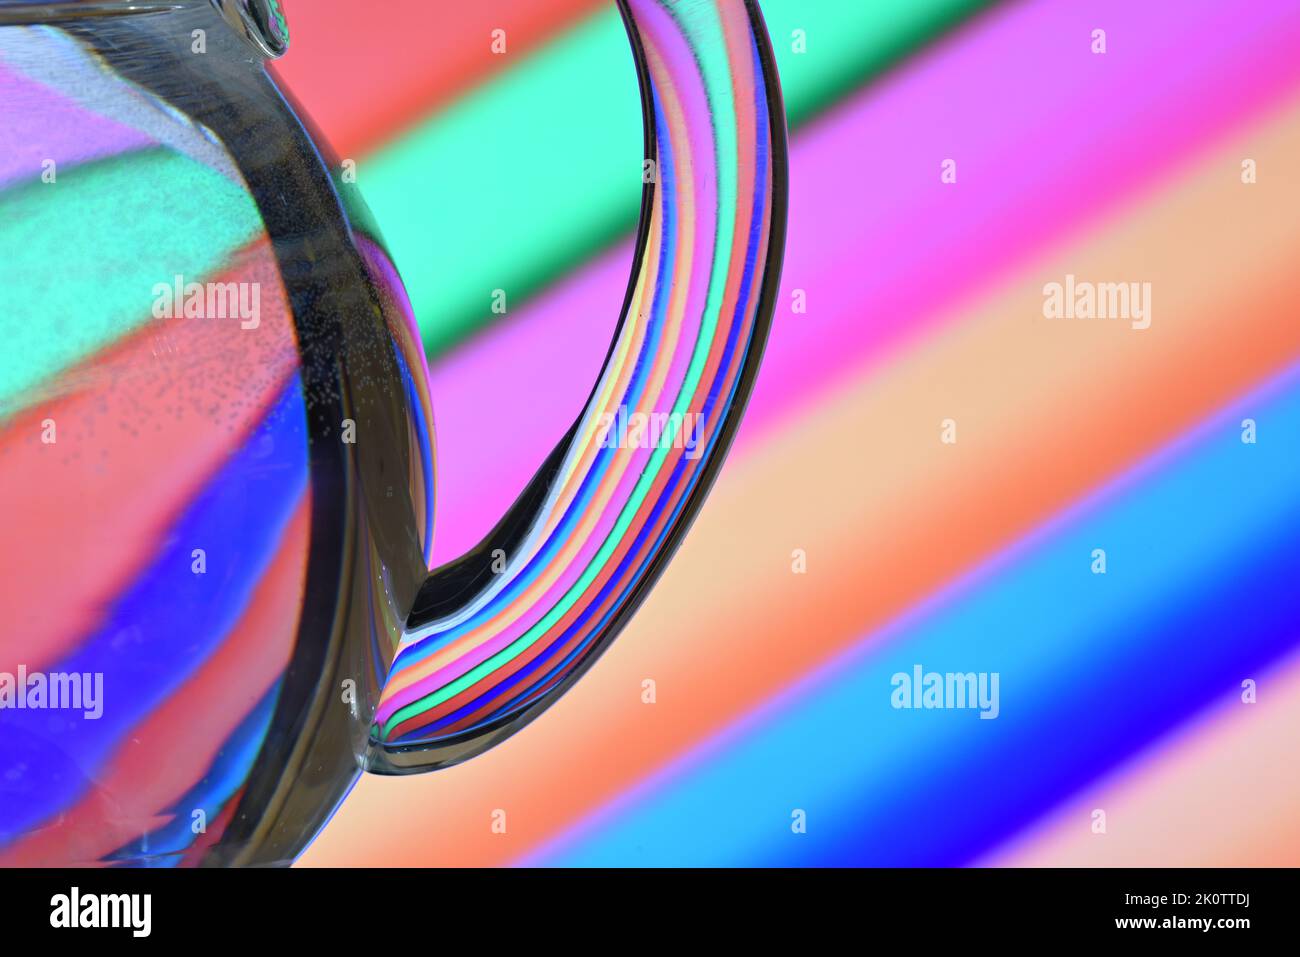 Ilusión óptica creada mediante la refracción de la luz con un recipiente de cristal lleno de agua y líneas diagonales de colores Stock Photo